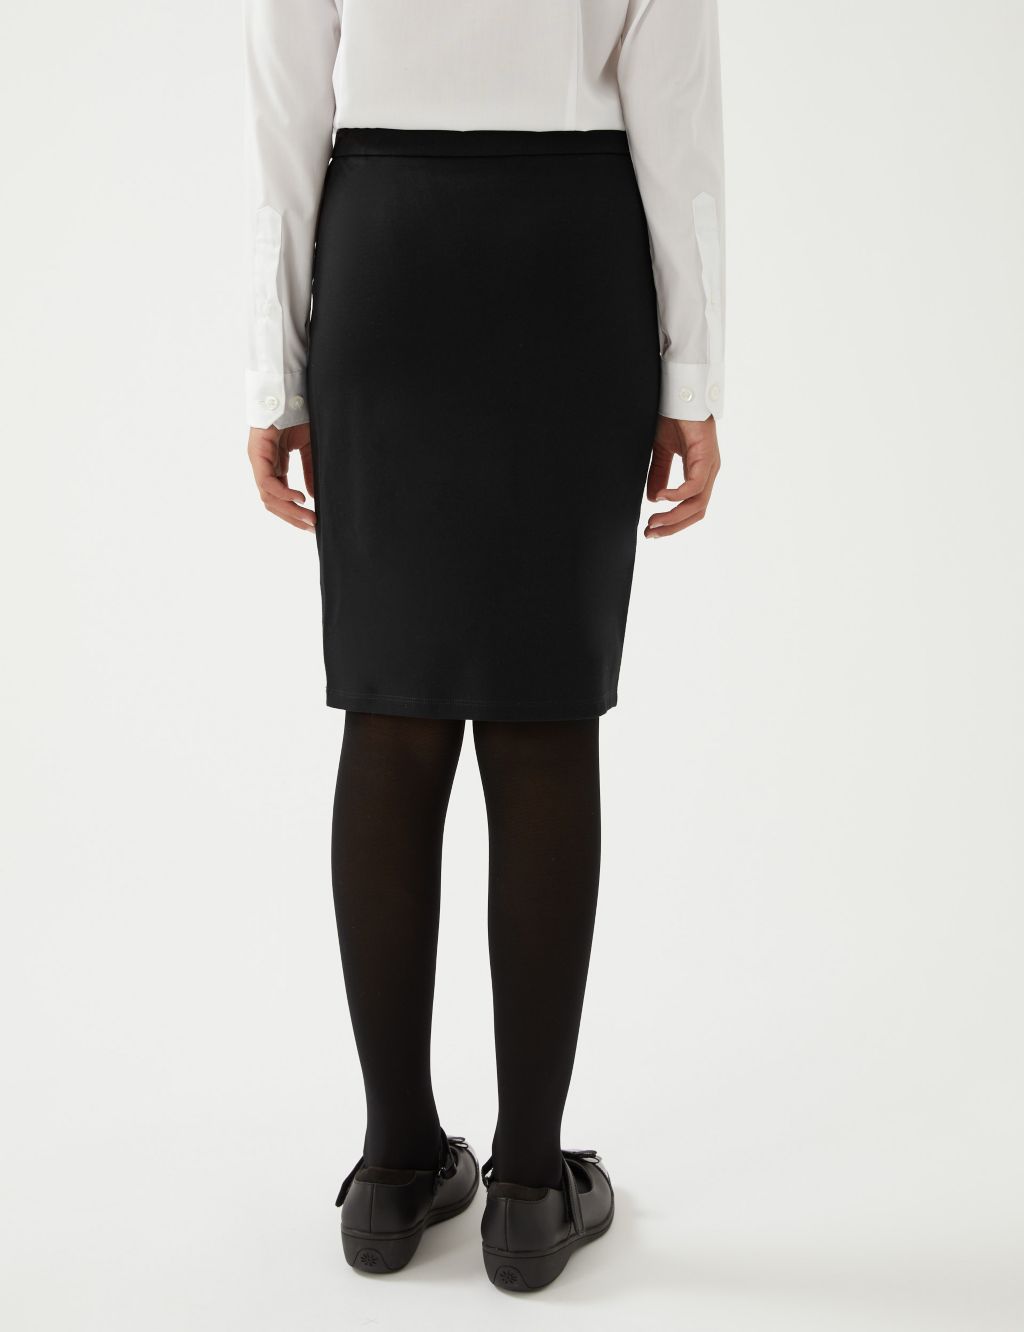 Girls Long Tube School Skirt (9-18 Yrs) image 4